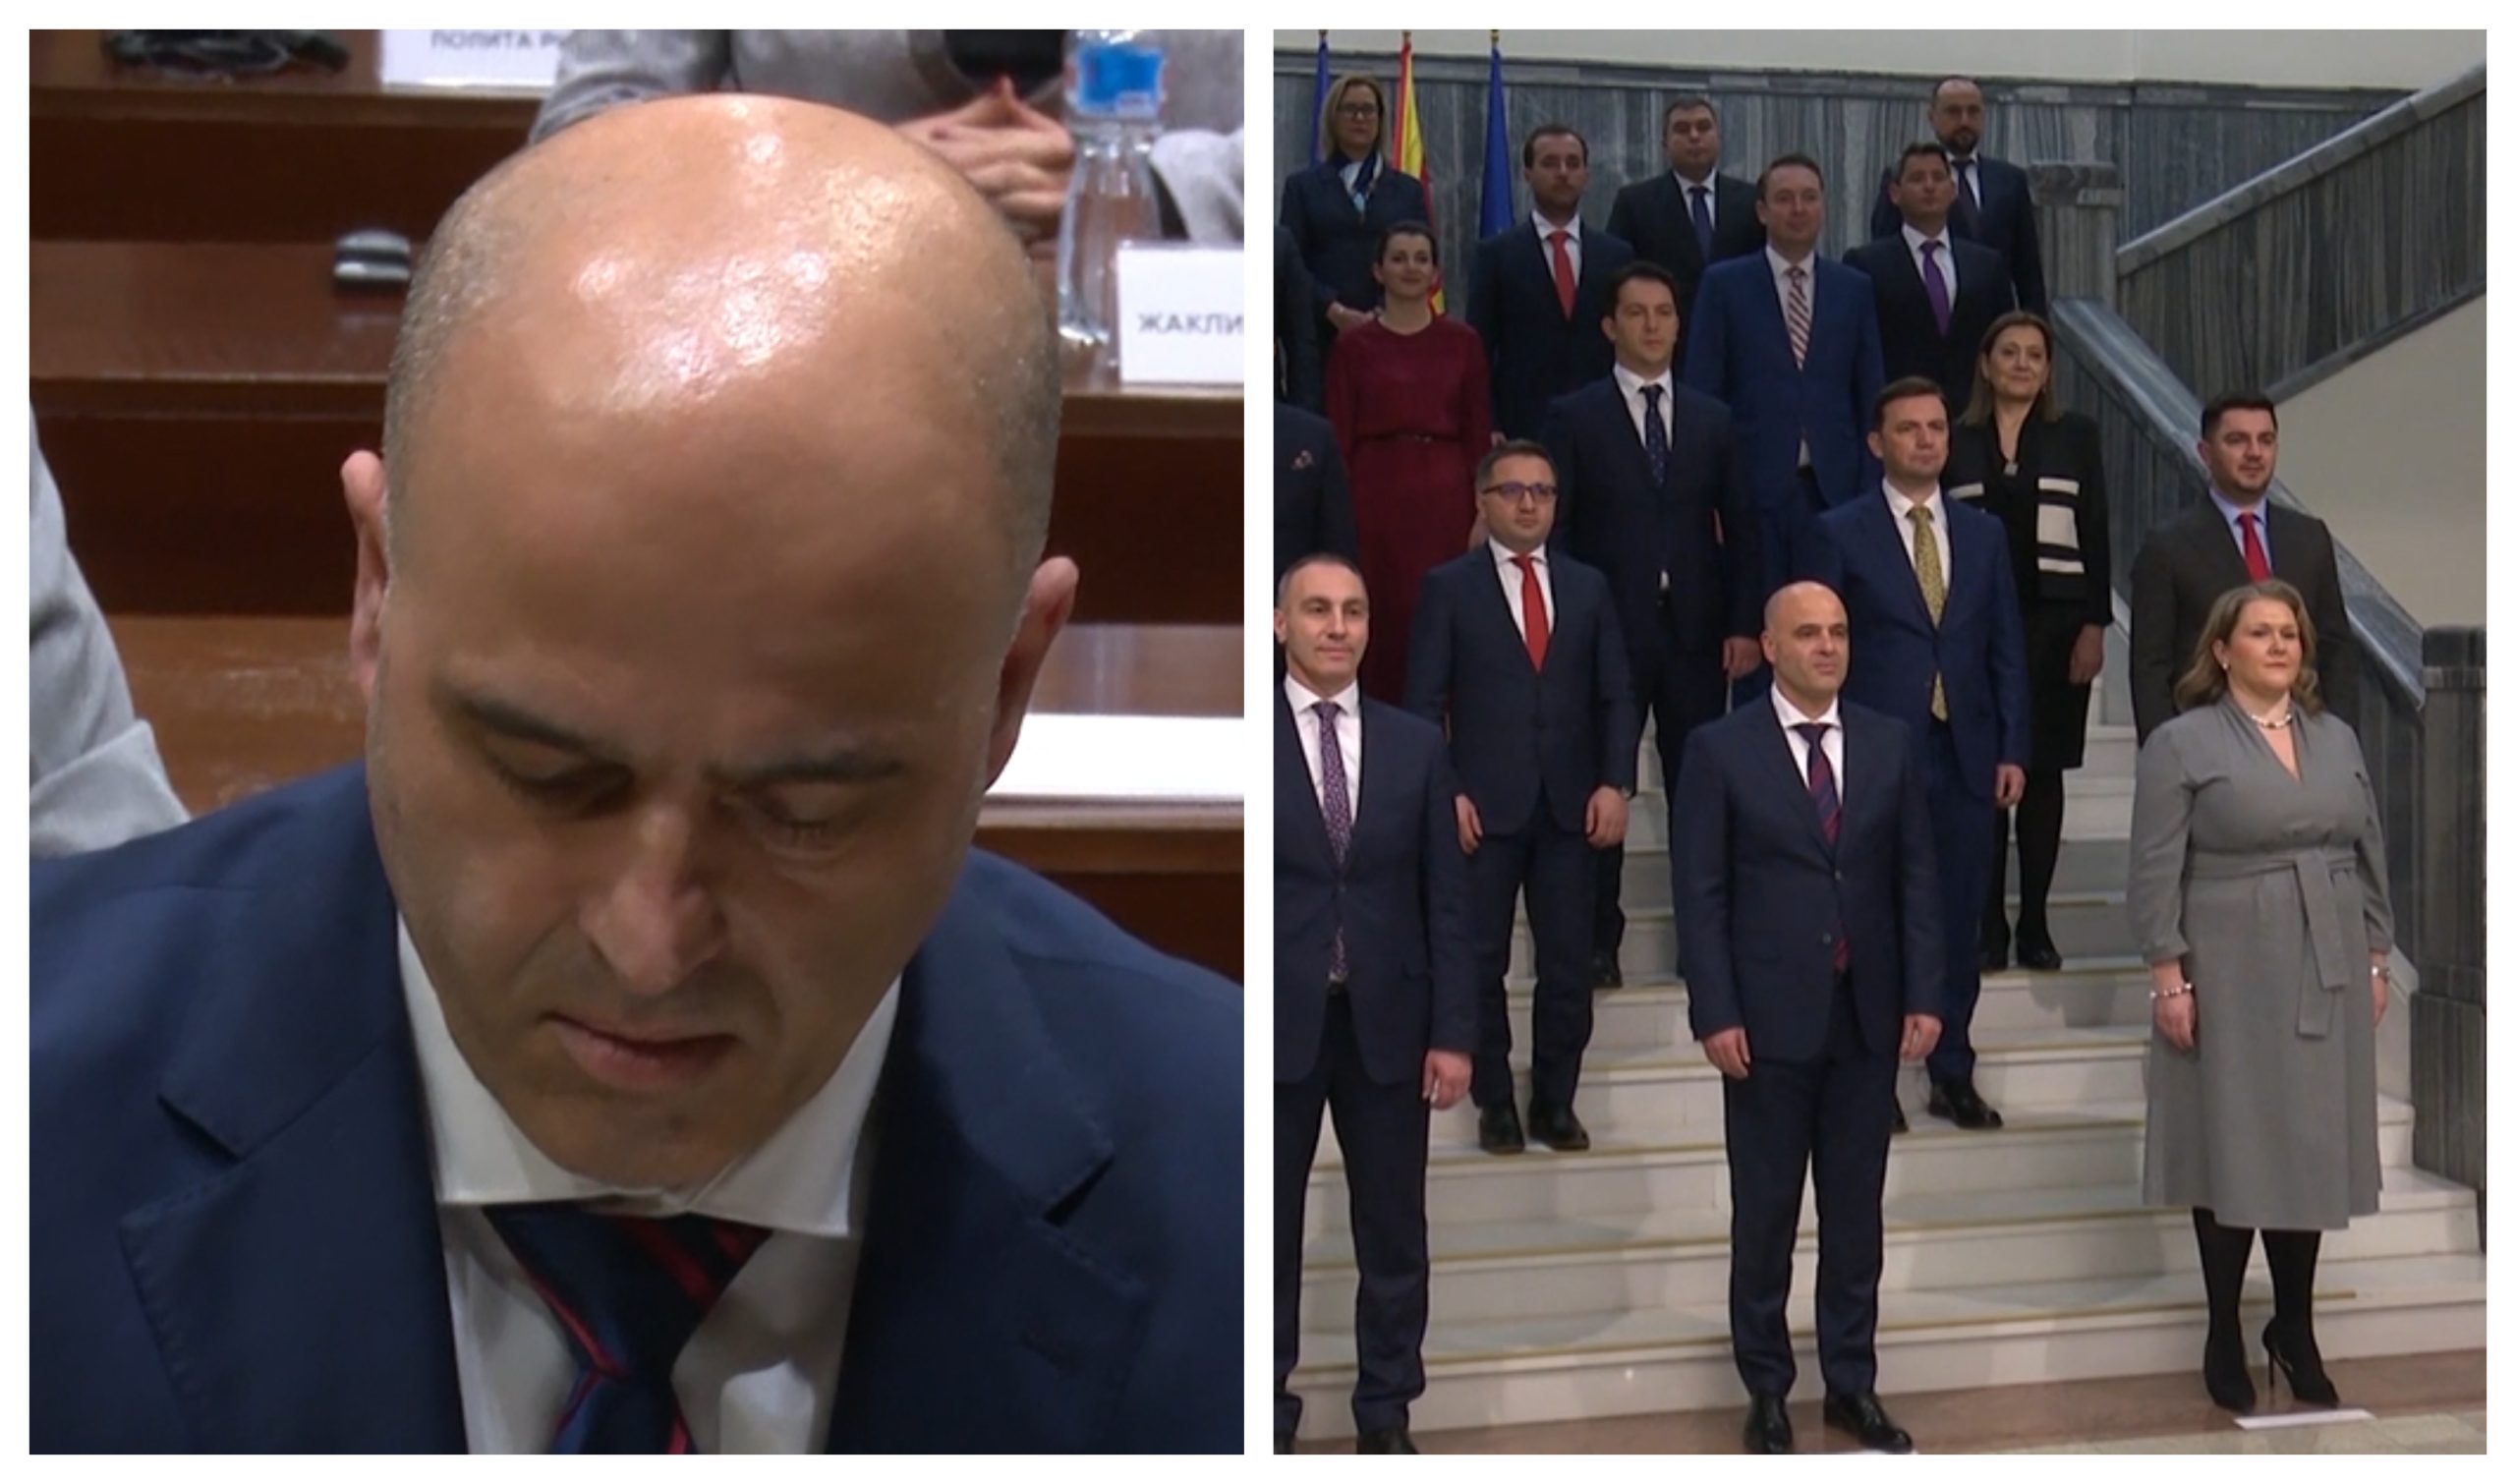 Раштиман оркестар во Влада: Разговараат ли меѓу себе премиерот и министрите на Илинденска број 2?!